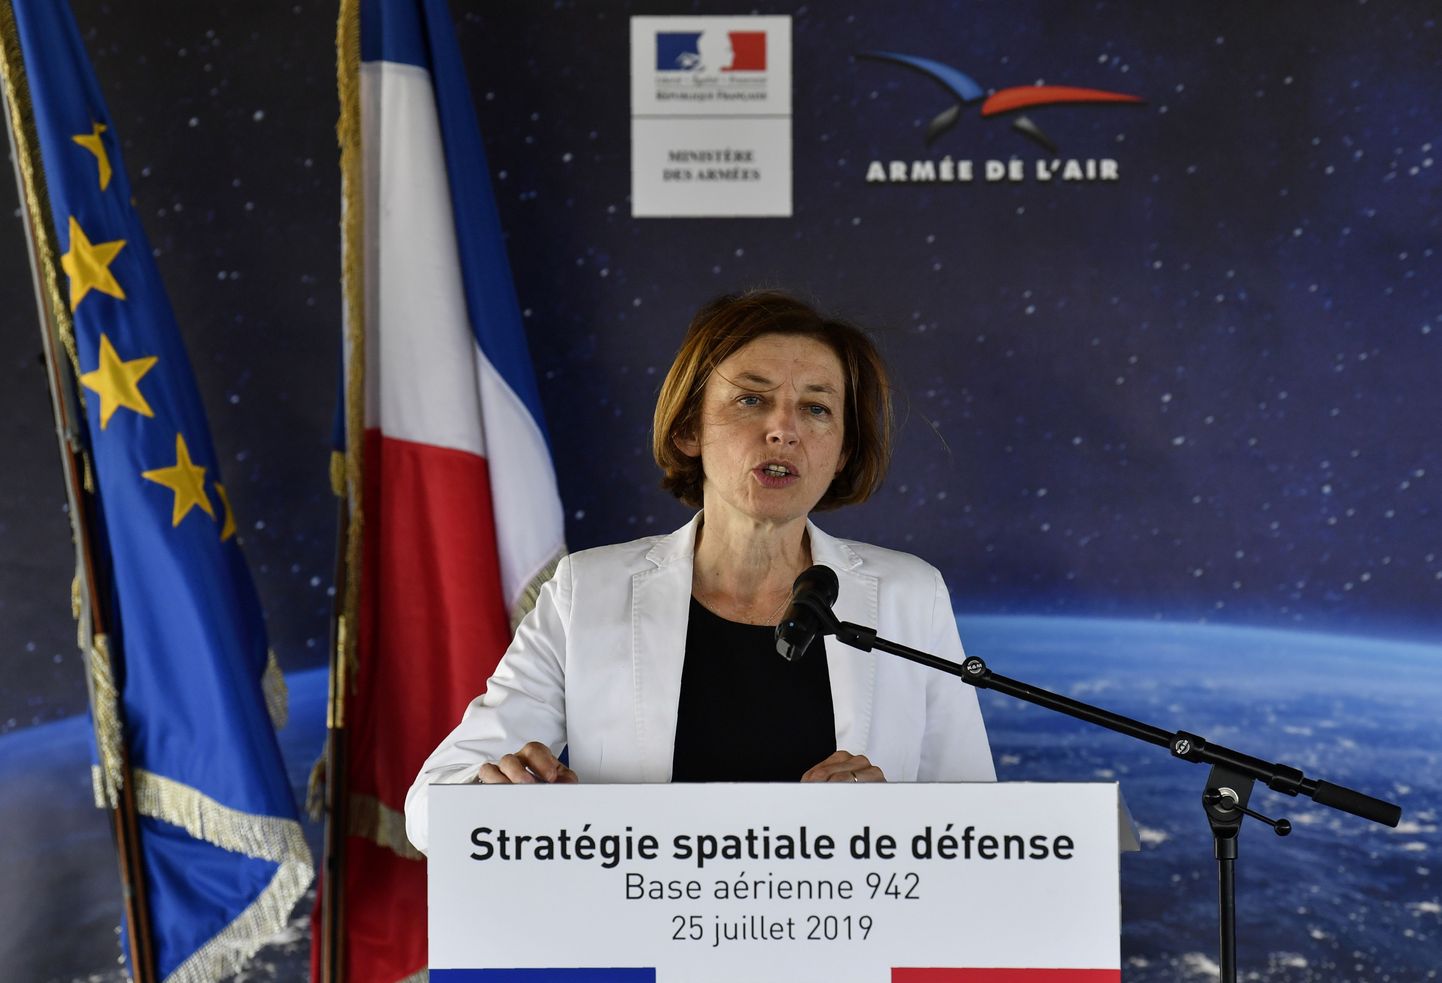 Prantsuse kaitseminister Florence Parly pidamas kõnet kosmoseväe loomisest Verduni õhuvägede baasis.